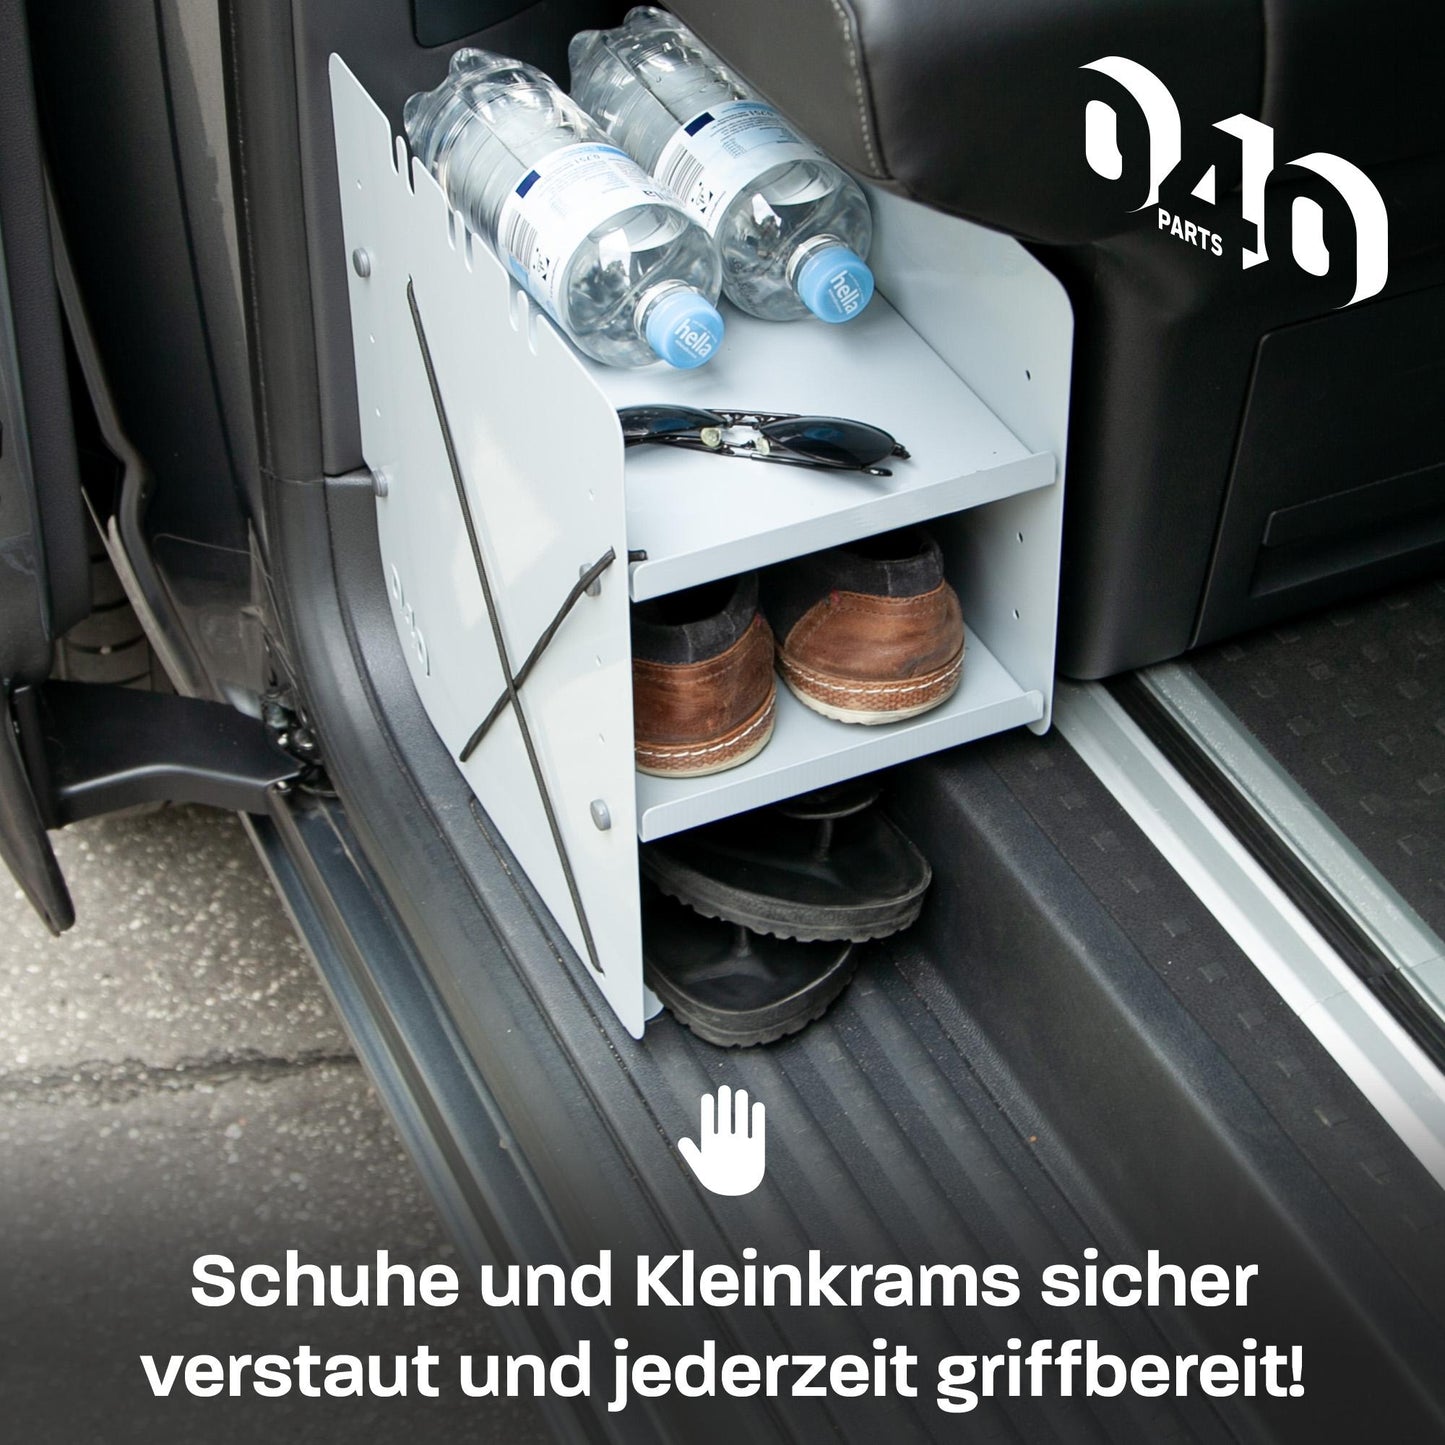 040 Parts Schuhregal GRAU BEIFAHRERSEITE Zubehör passend für VW T5 T6 T6.1 Schuhorganizer Schuhtasche